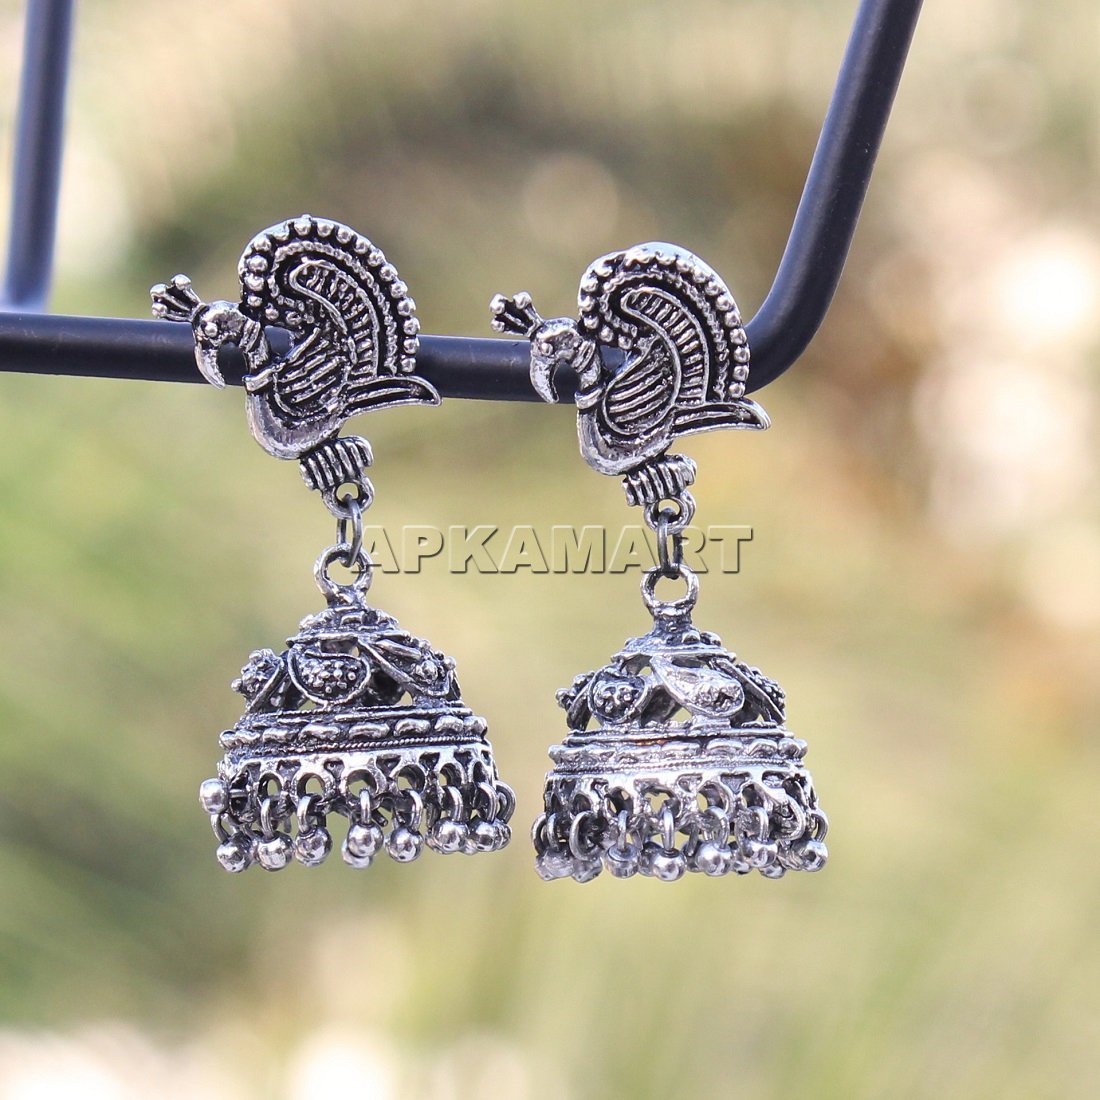 Earrings - Peacock Design Jhumki - For Women & Girls - ApkaMart